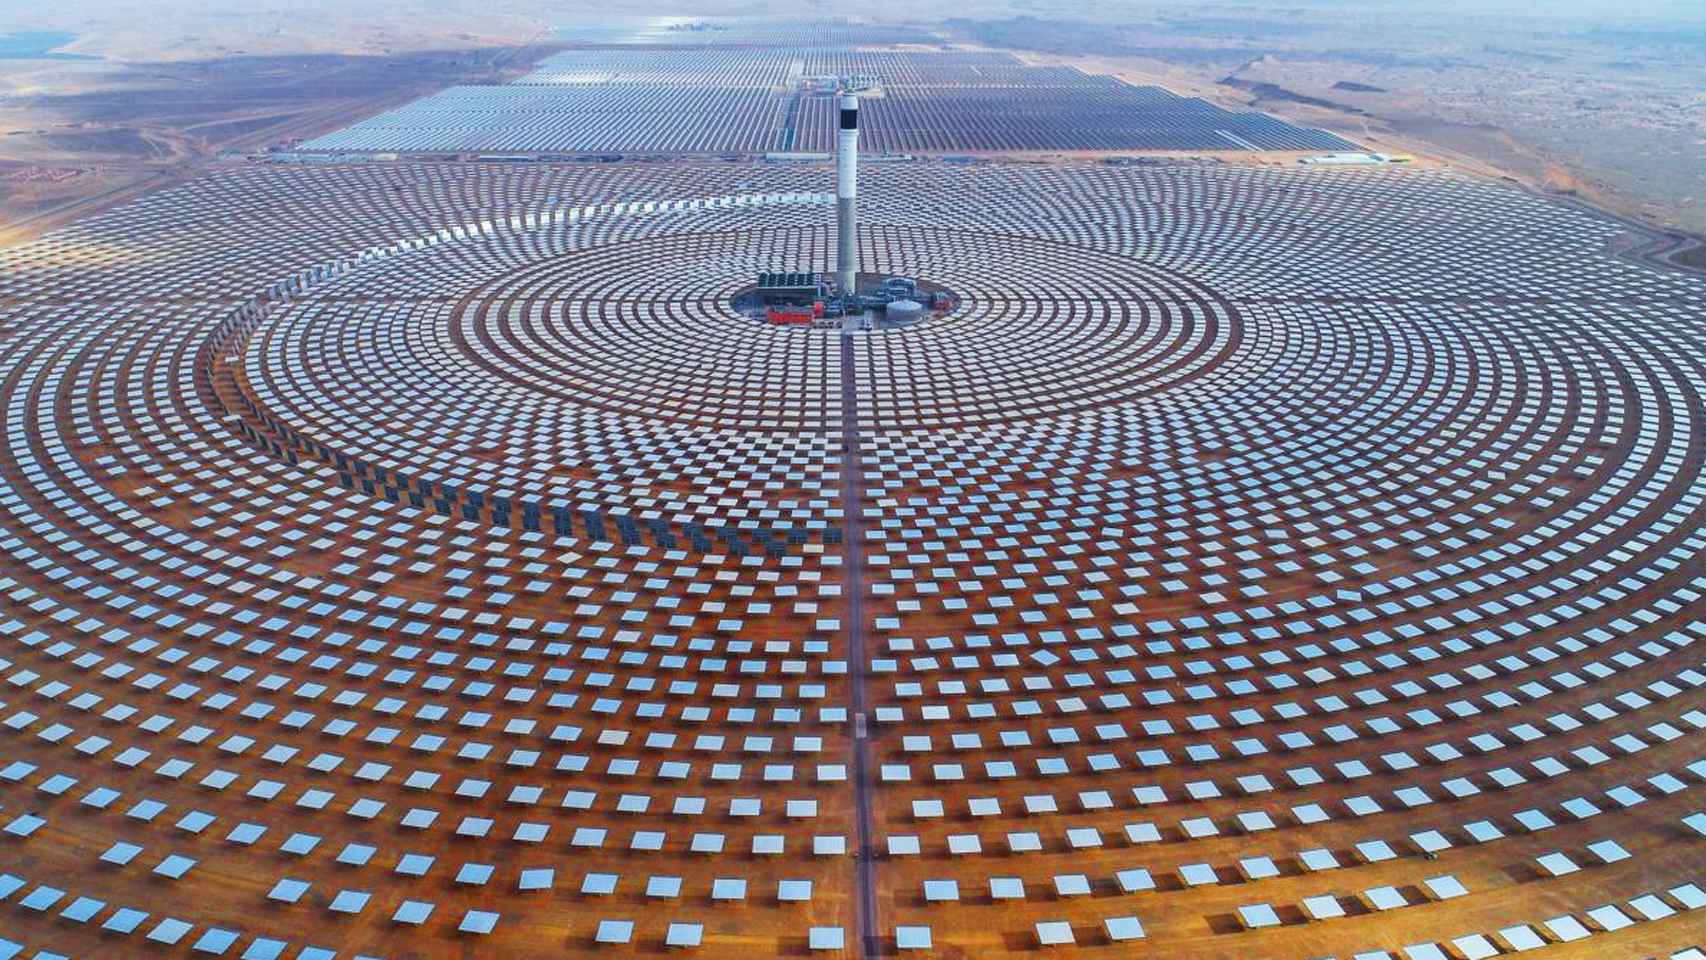 La central solar de Ouarzazat (central de Noor), un complejo de energía solar situado en la región de Drâa-Tafilalet, en Marruecos. Con 510 MW, es la mayor central de energía solar concentrada del mundo.